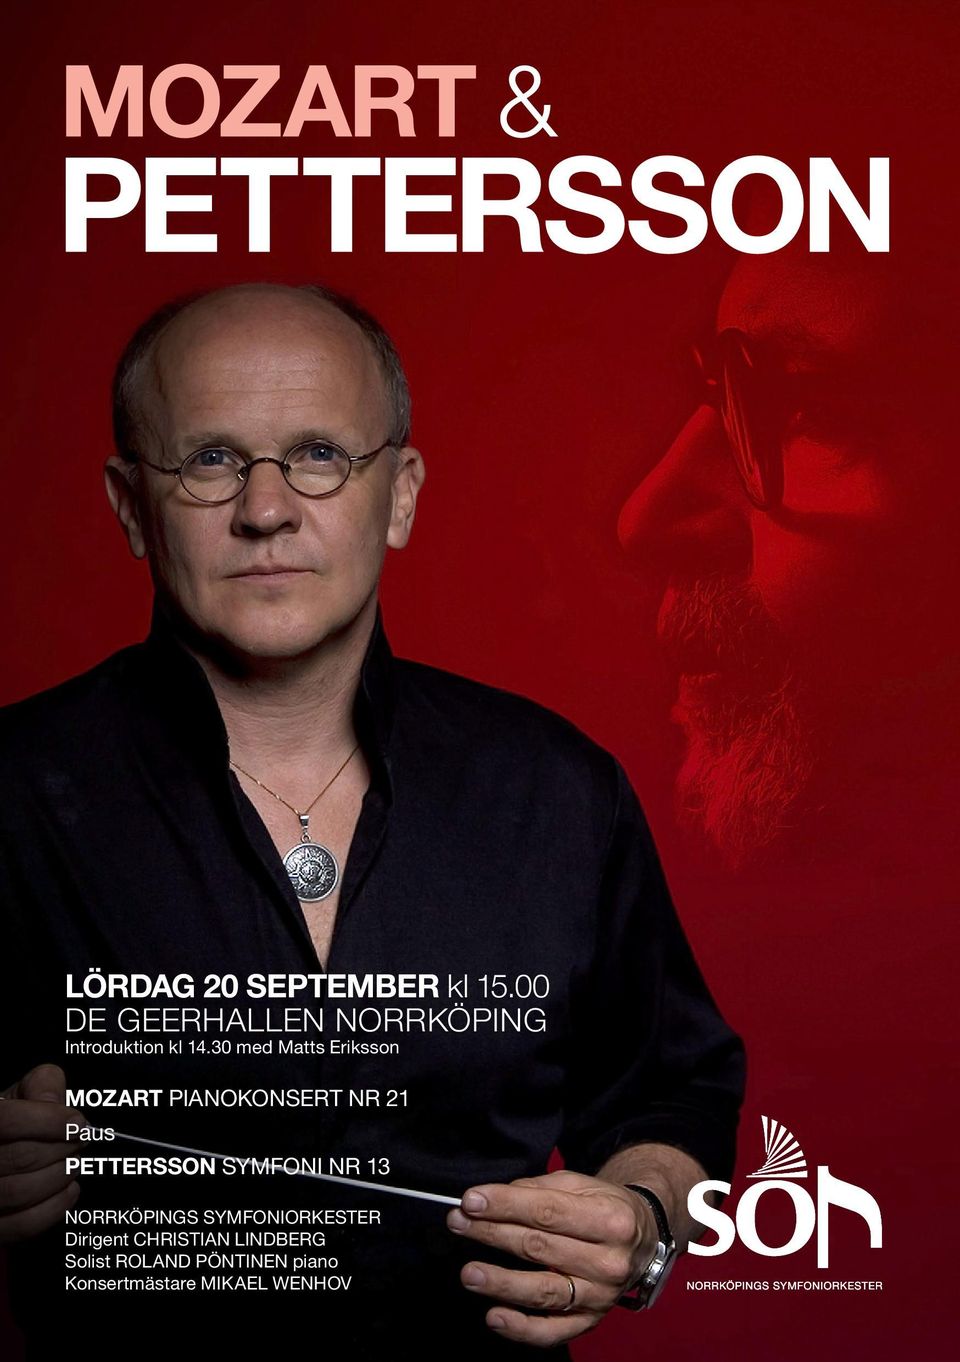 30 med Matts Eriksson MOZART PIANOKONSERT NR 21 Paus PETTERSSON